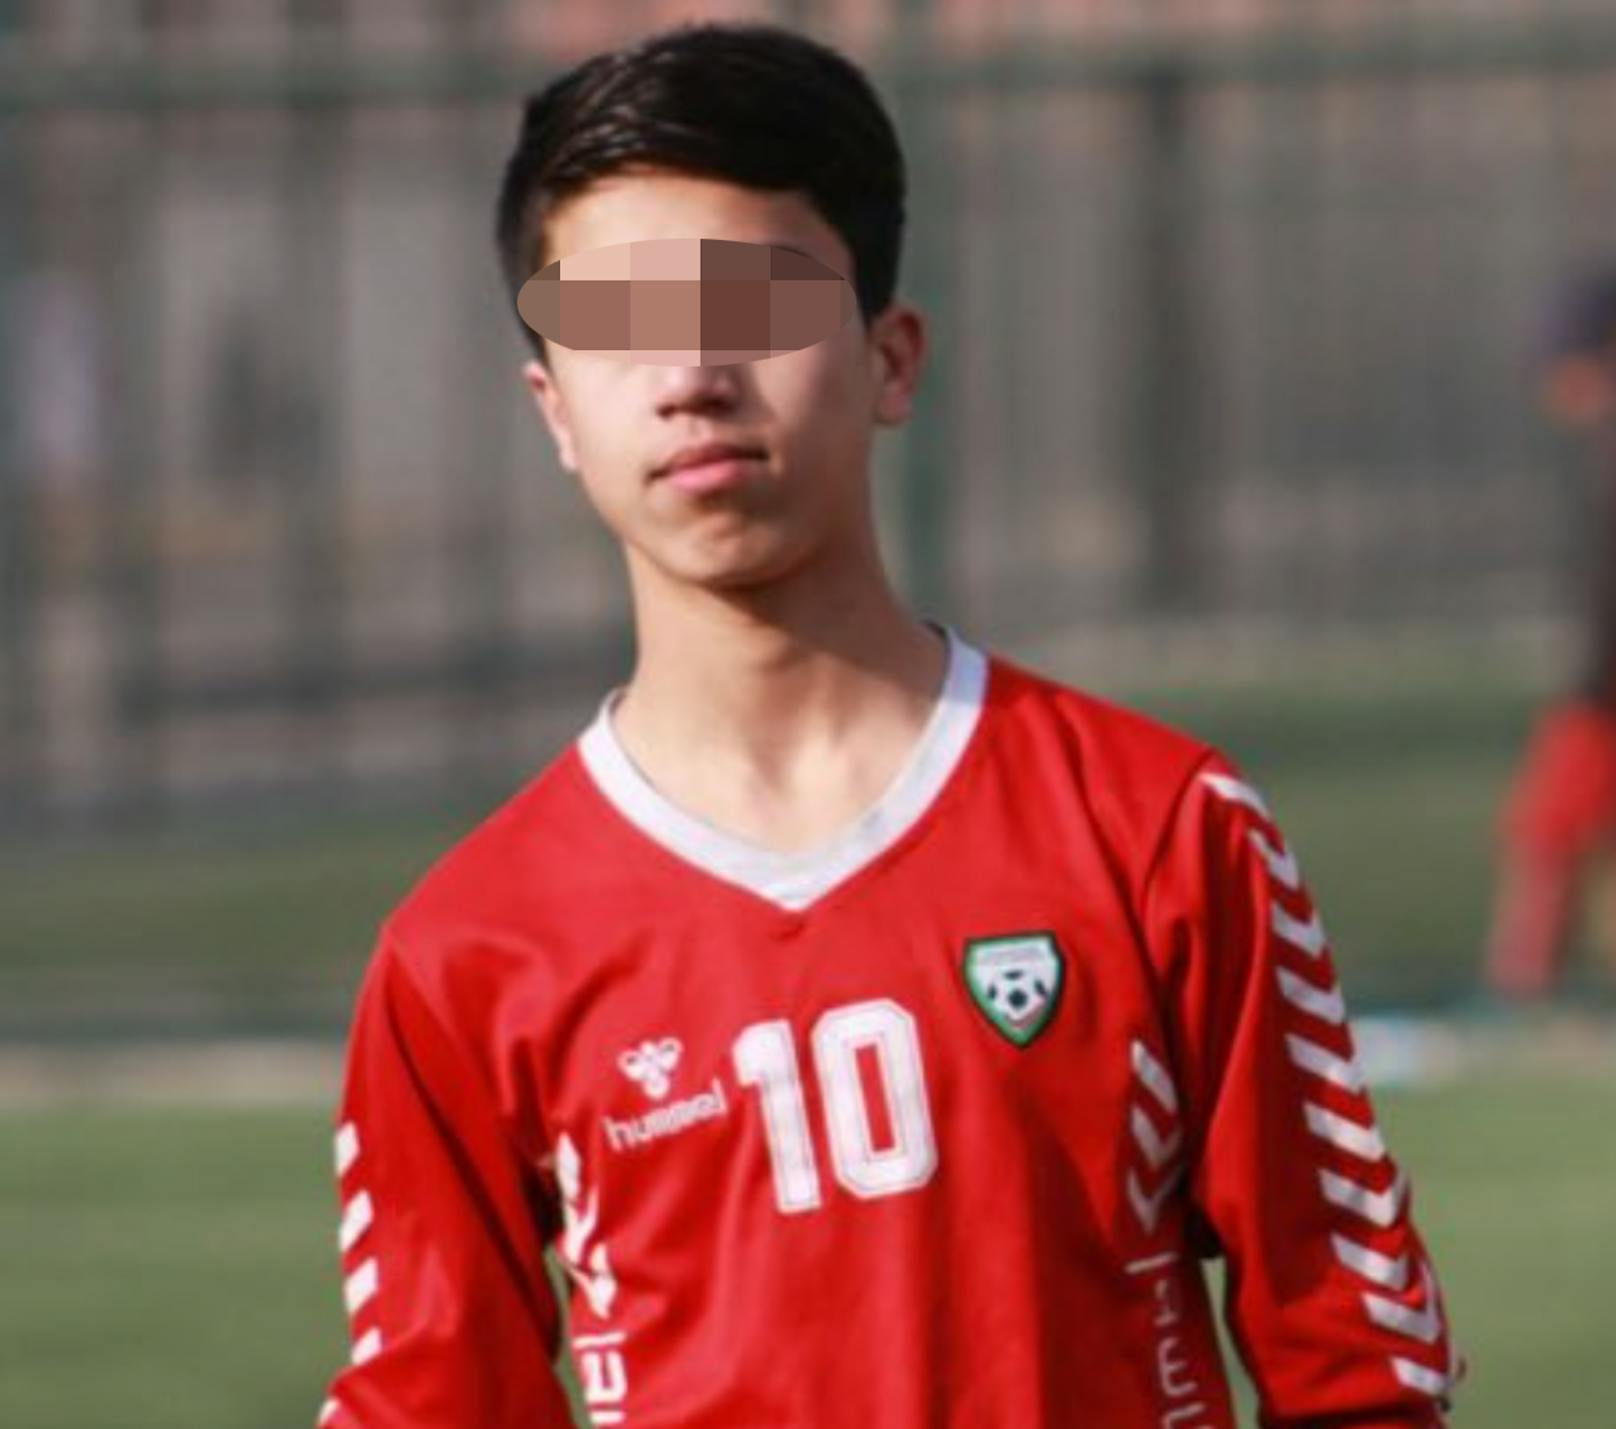 Der 19-Jährige war ein aufstrebendes afghanisches Fussballtalent.